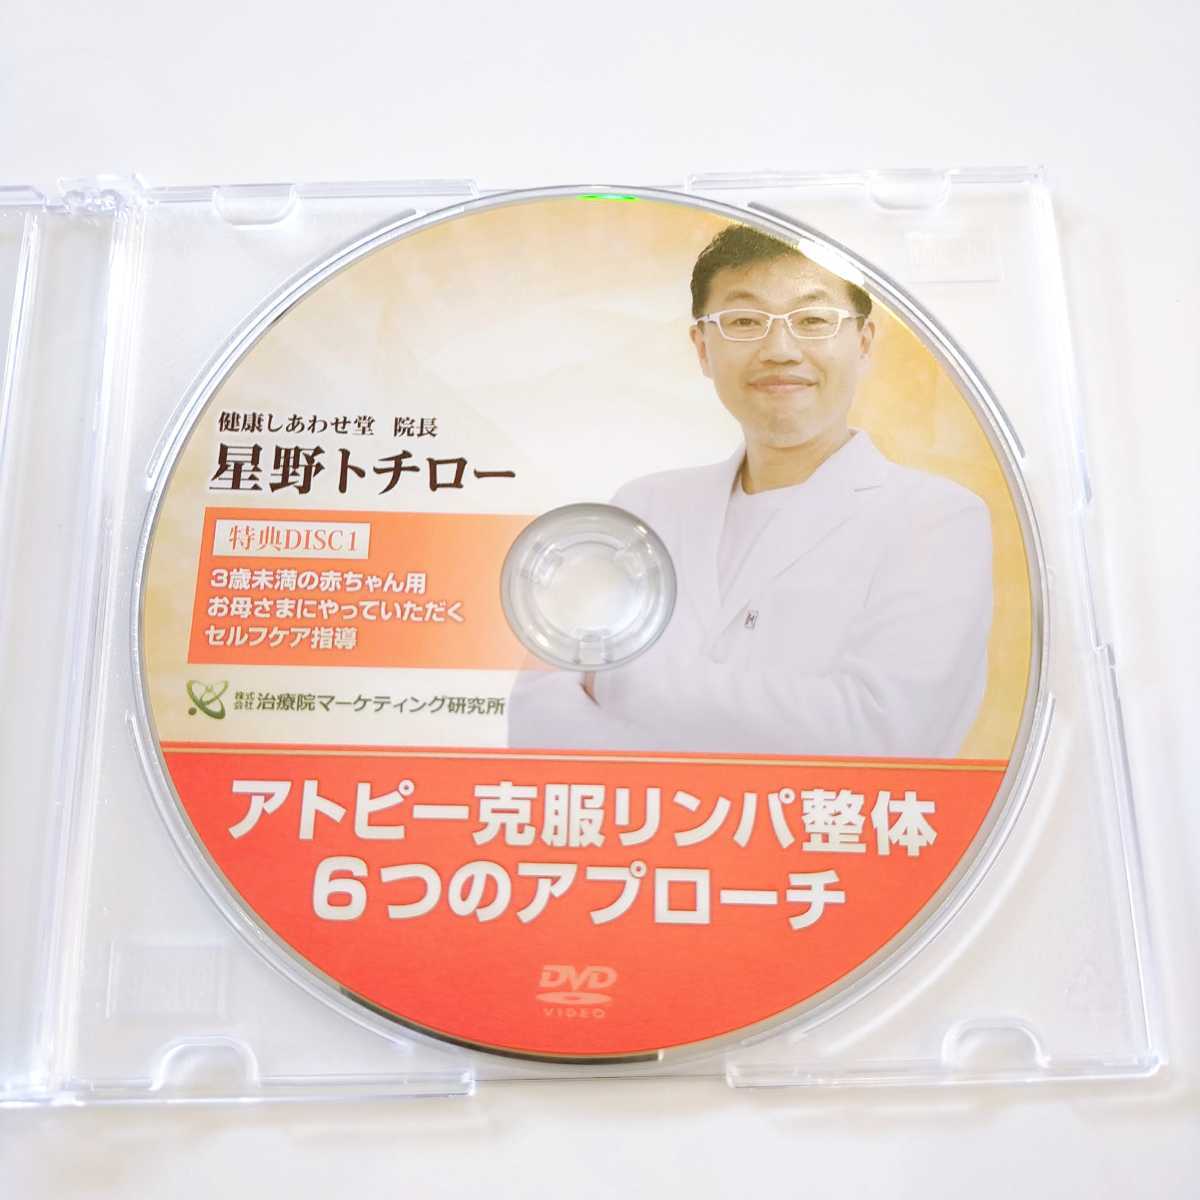 誠実】 DVD 星野トチロー 6つのアプローチ アトピー克服リンパ整体 